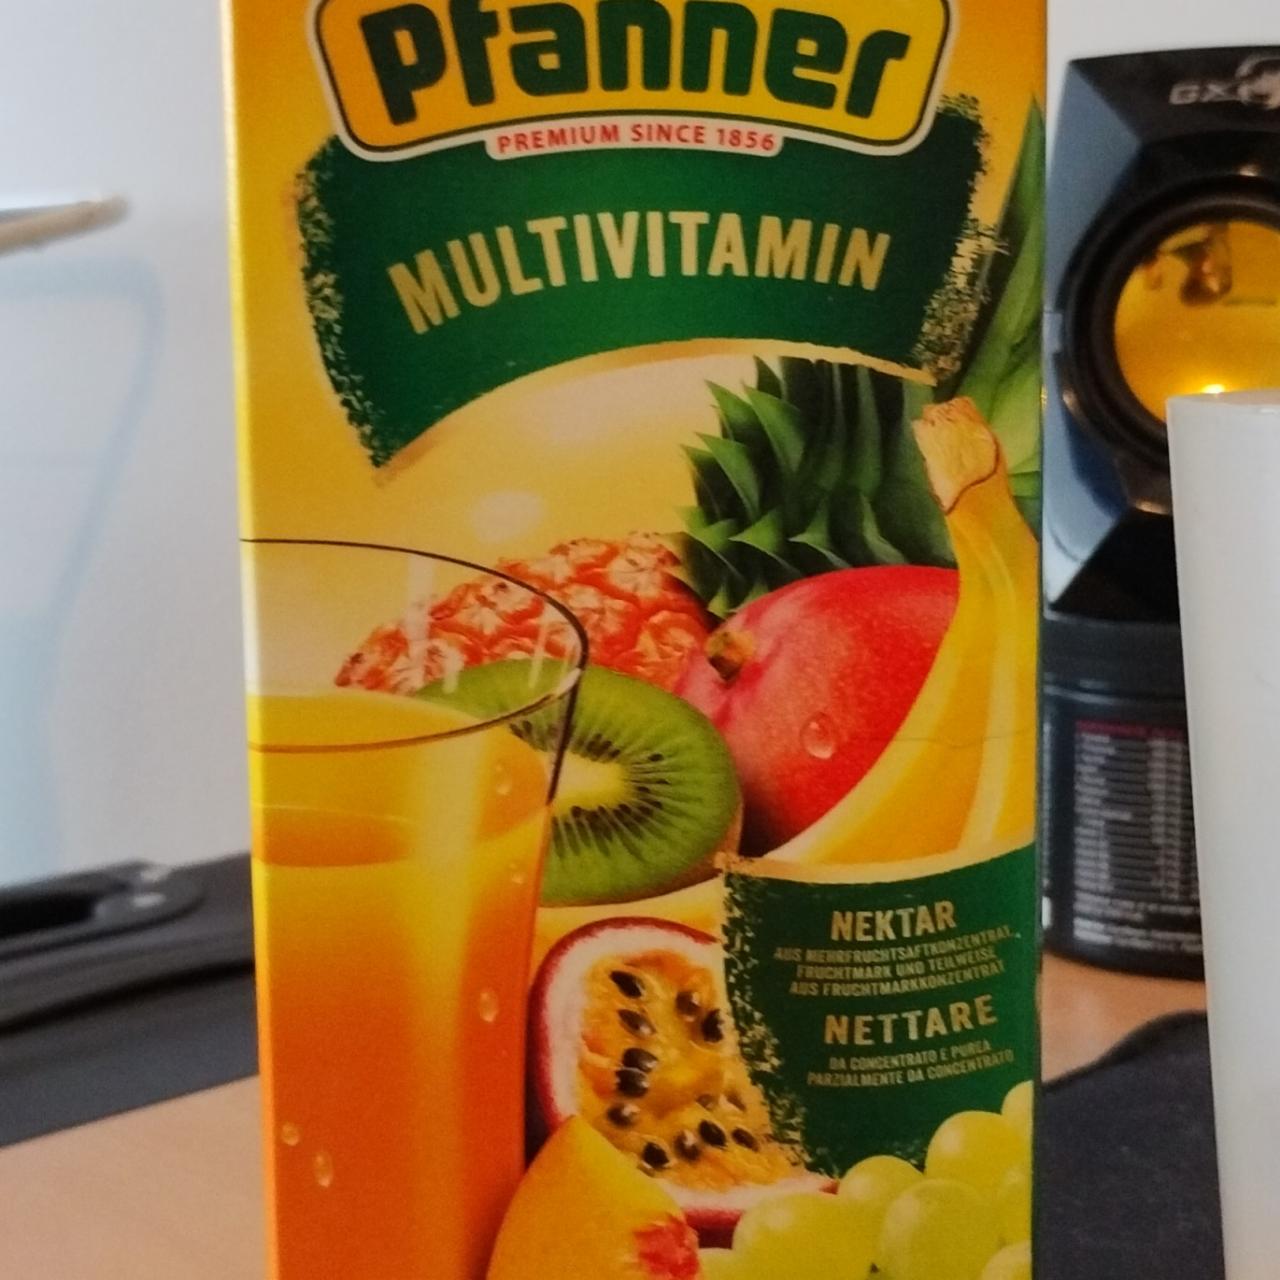 Képek - Multivitamin nektar Pfanner